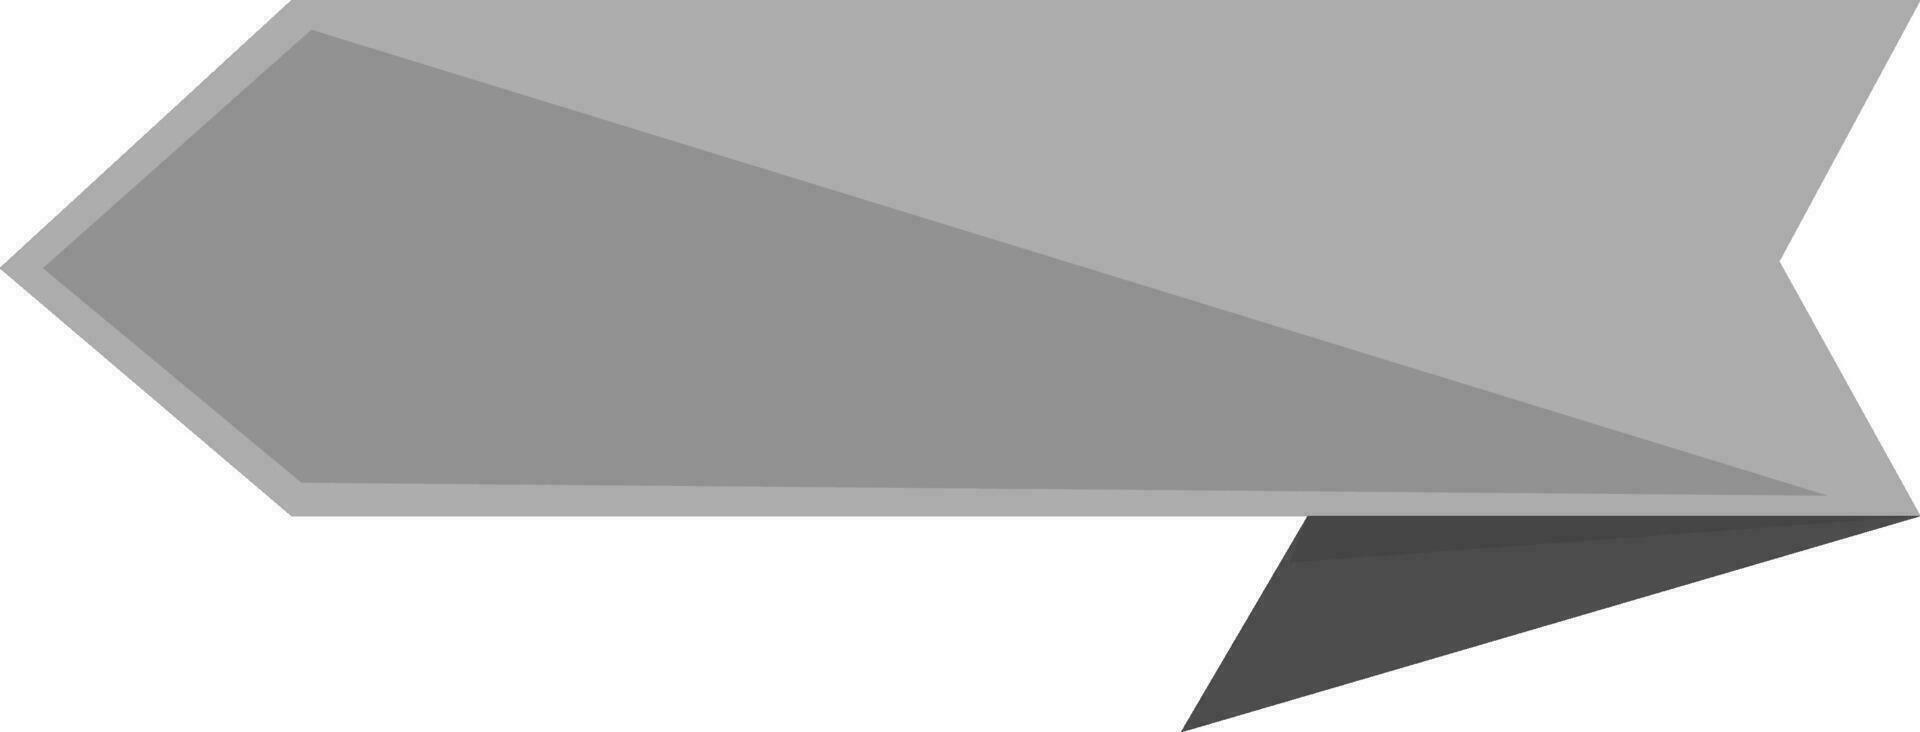 La Flèche style gris et noir ruban. vecteur